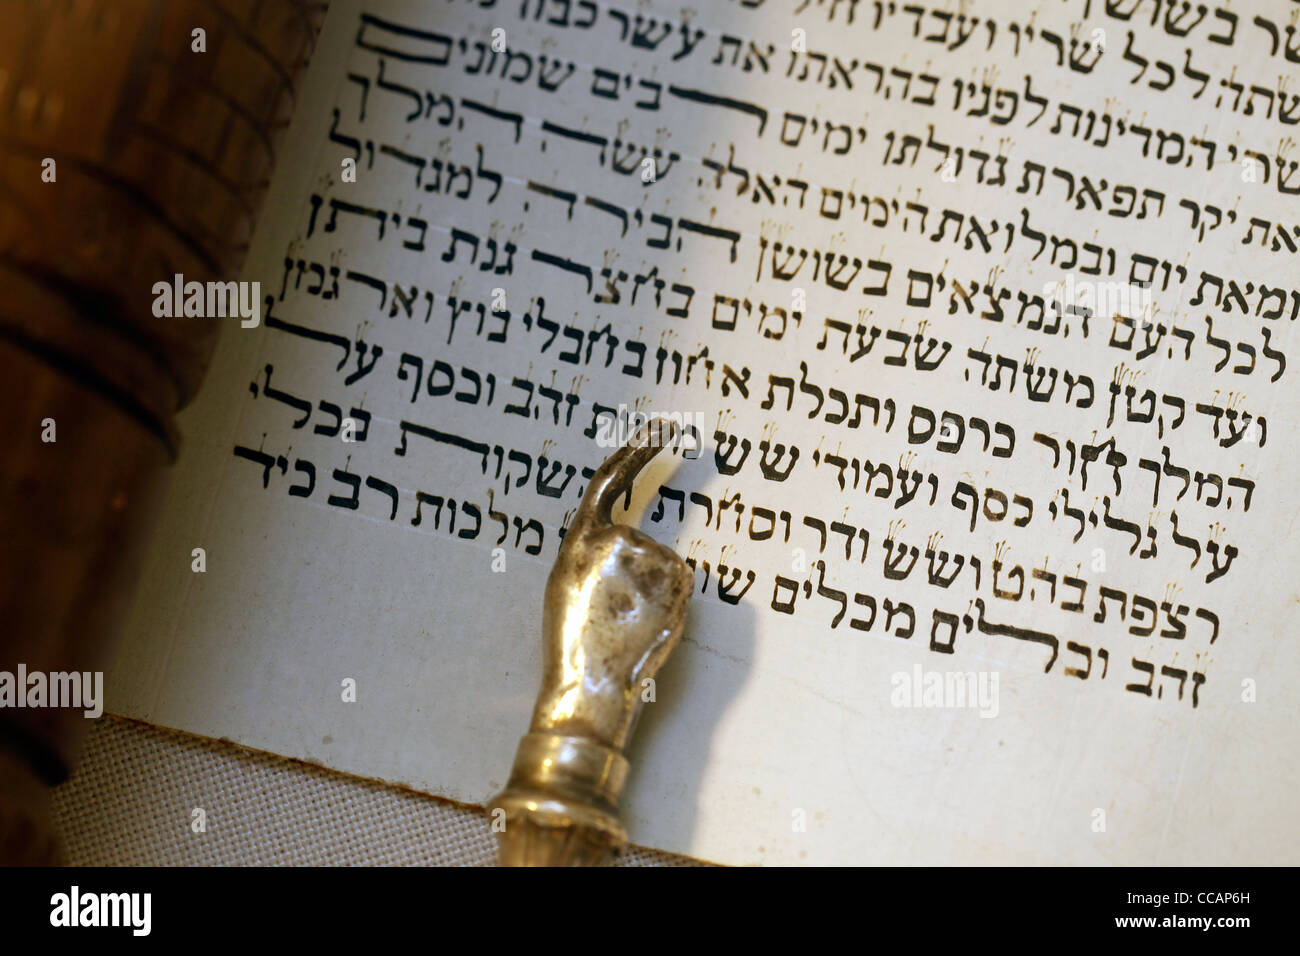 Ein silber Yad jüdische rituelle Zeiger, im Volksmund als Tora Zeiger, vom Reader verwendet, um den Text während der Tora lesen aus dem Pergament Thorarollen zu folgen bekannt Stockfoto